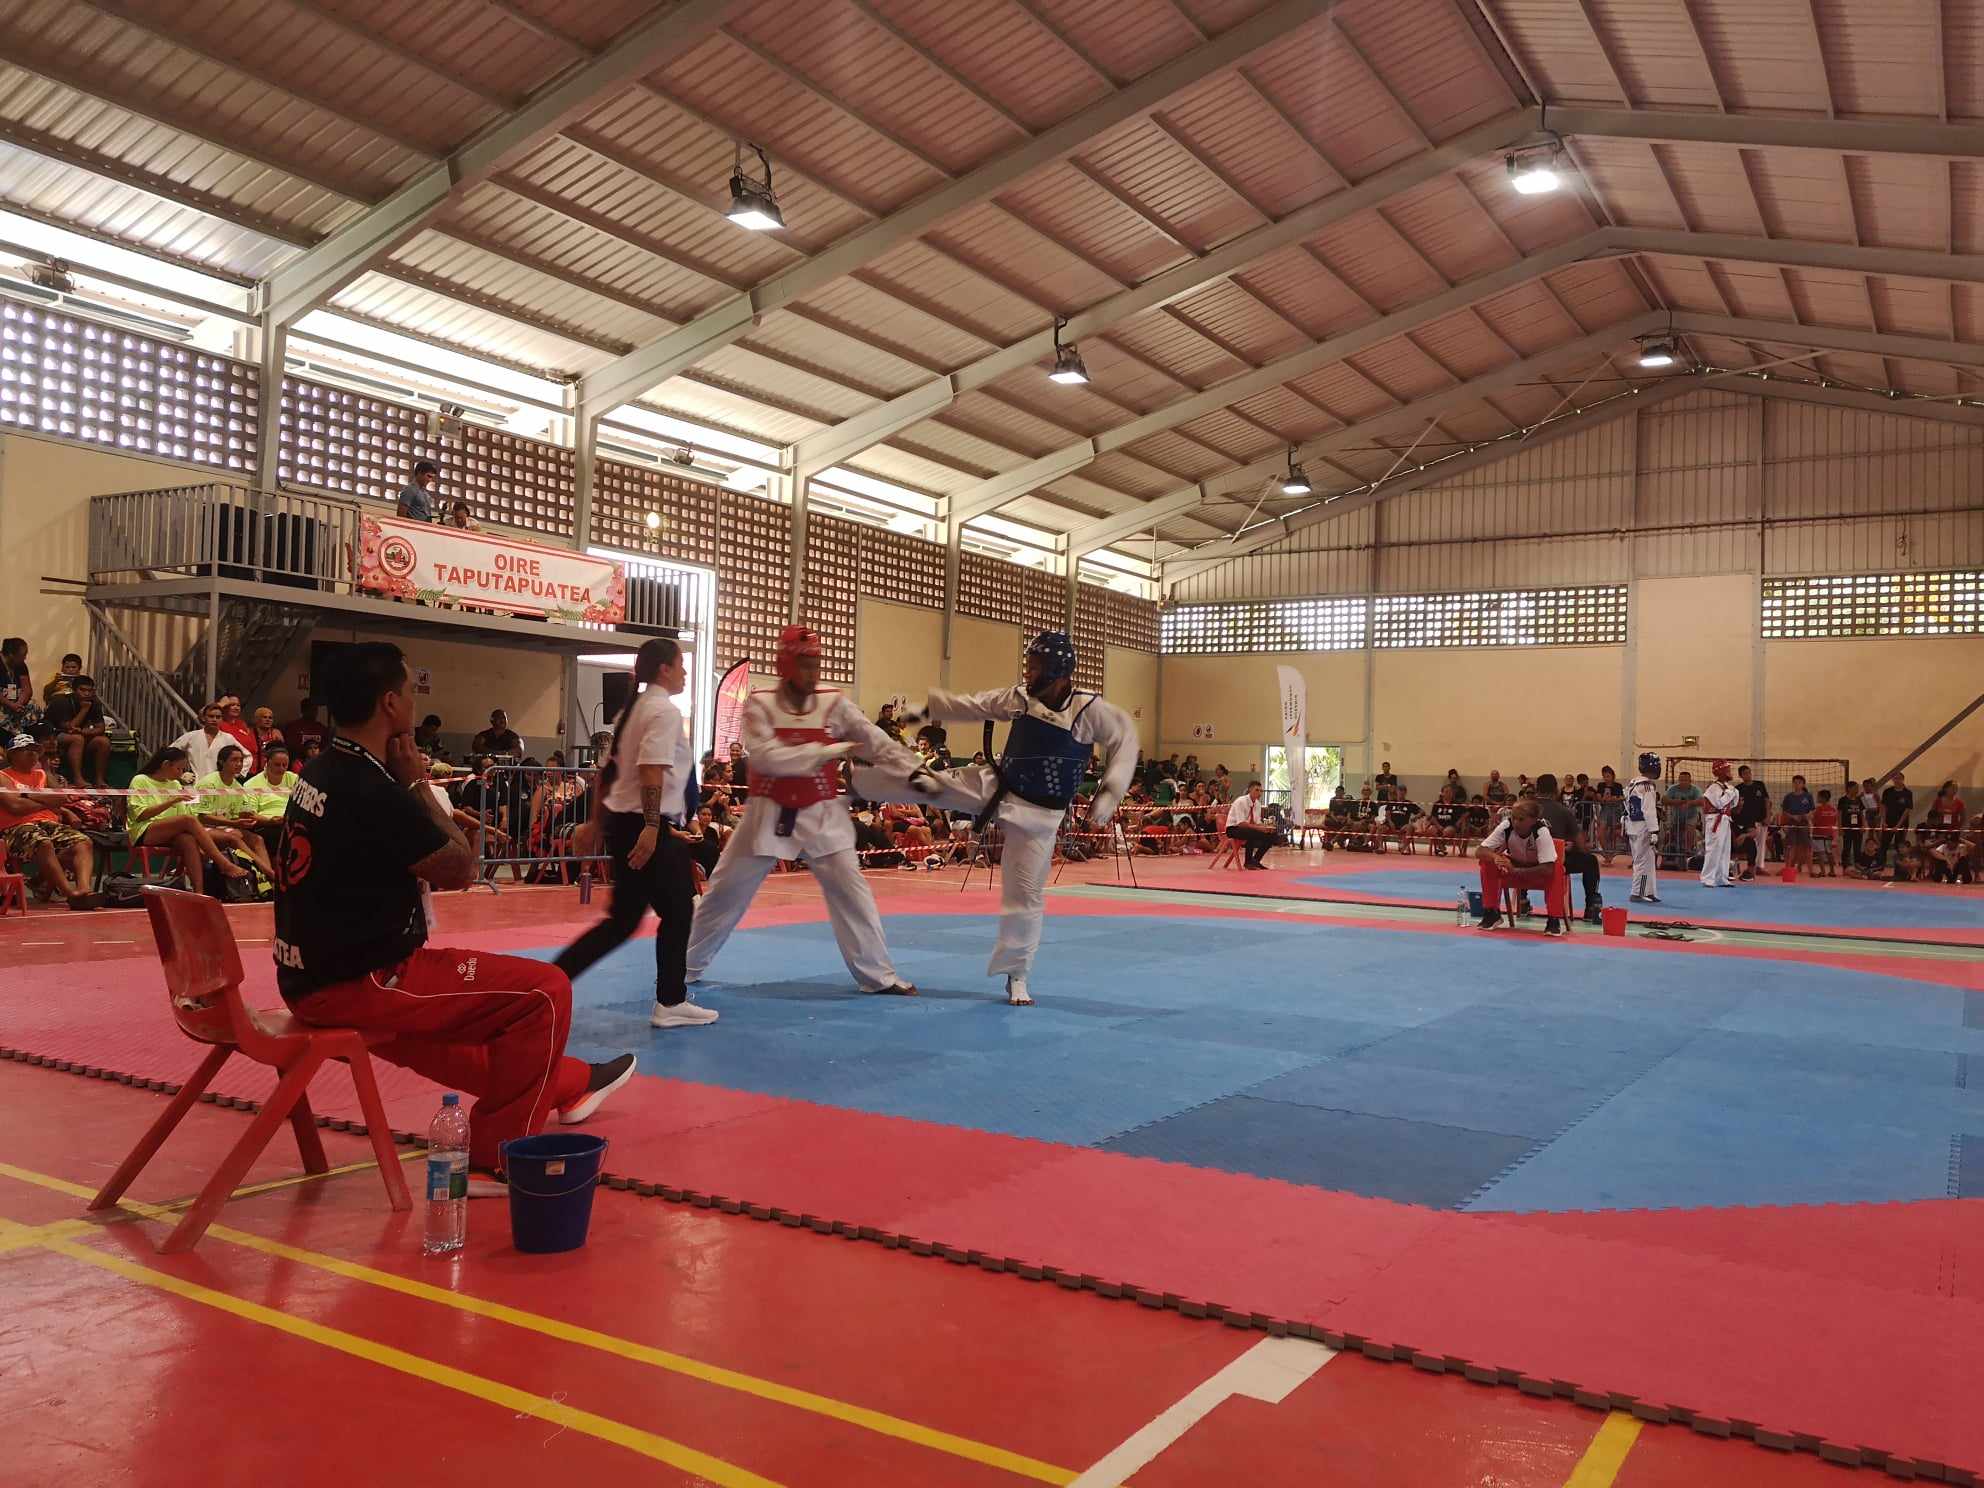 130 athlètes de 15 clubs étaient présents pour le taekwondo.